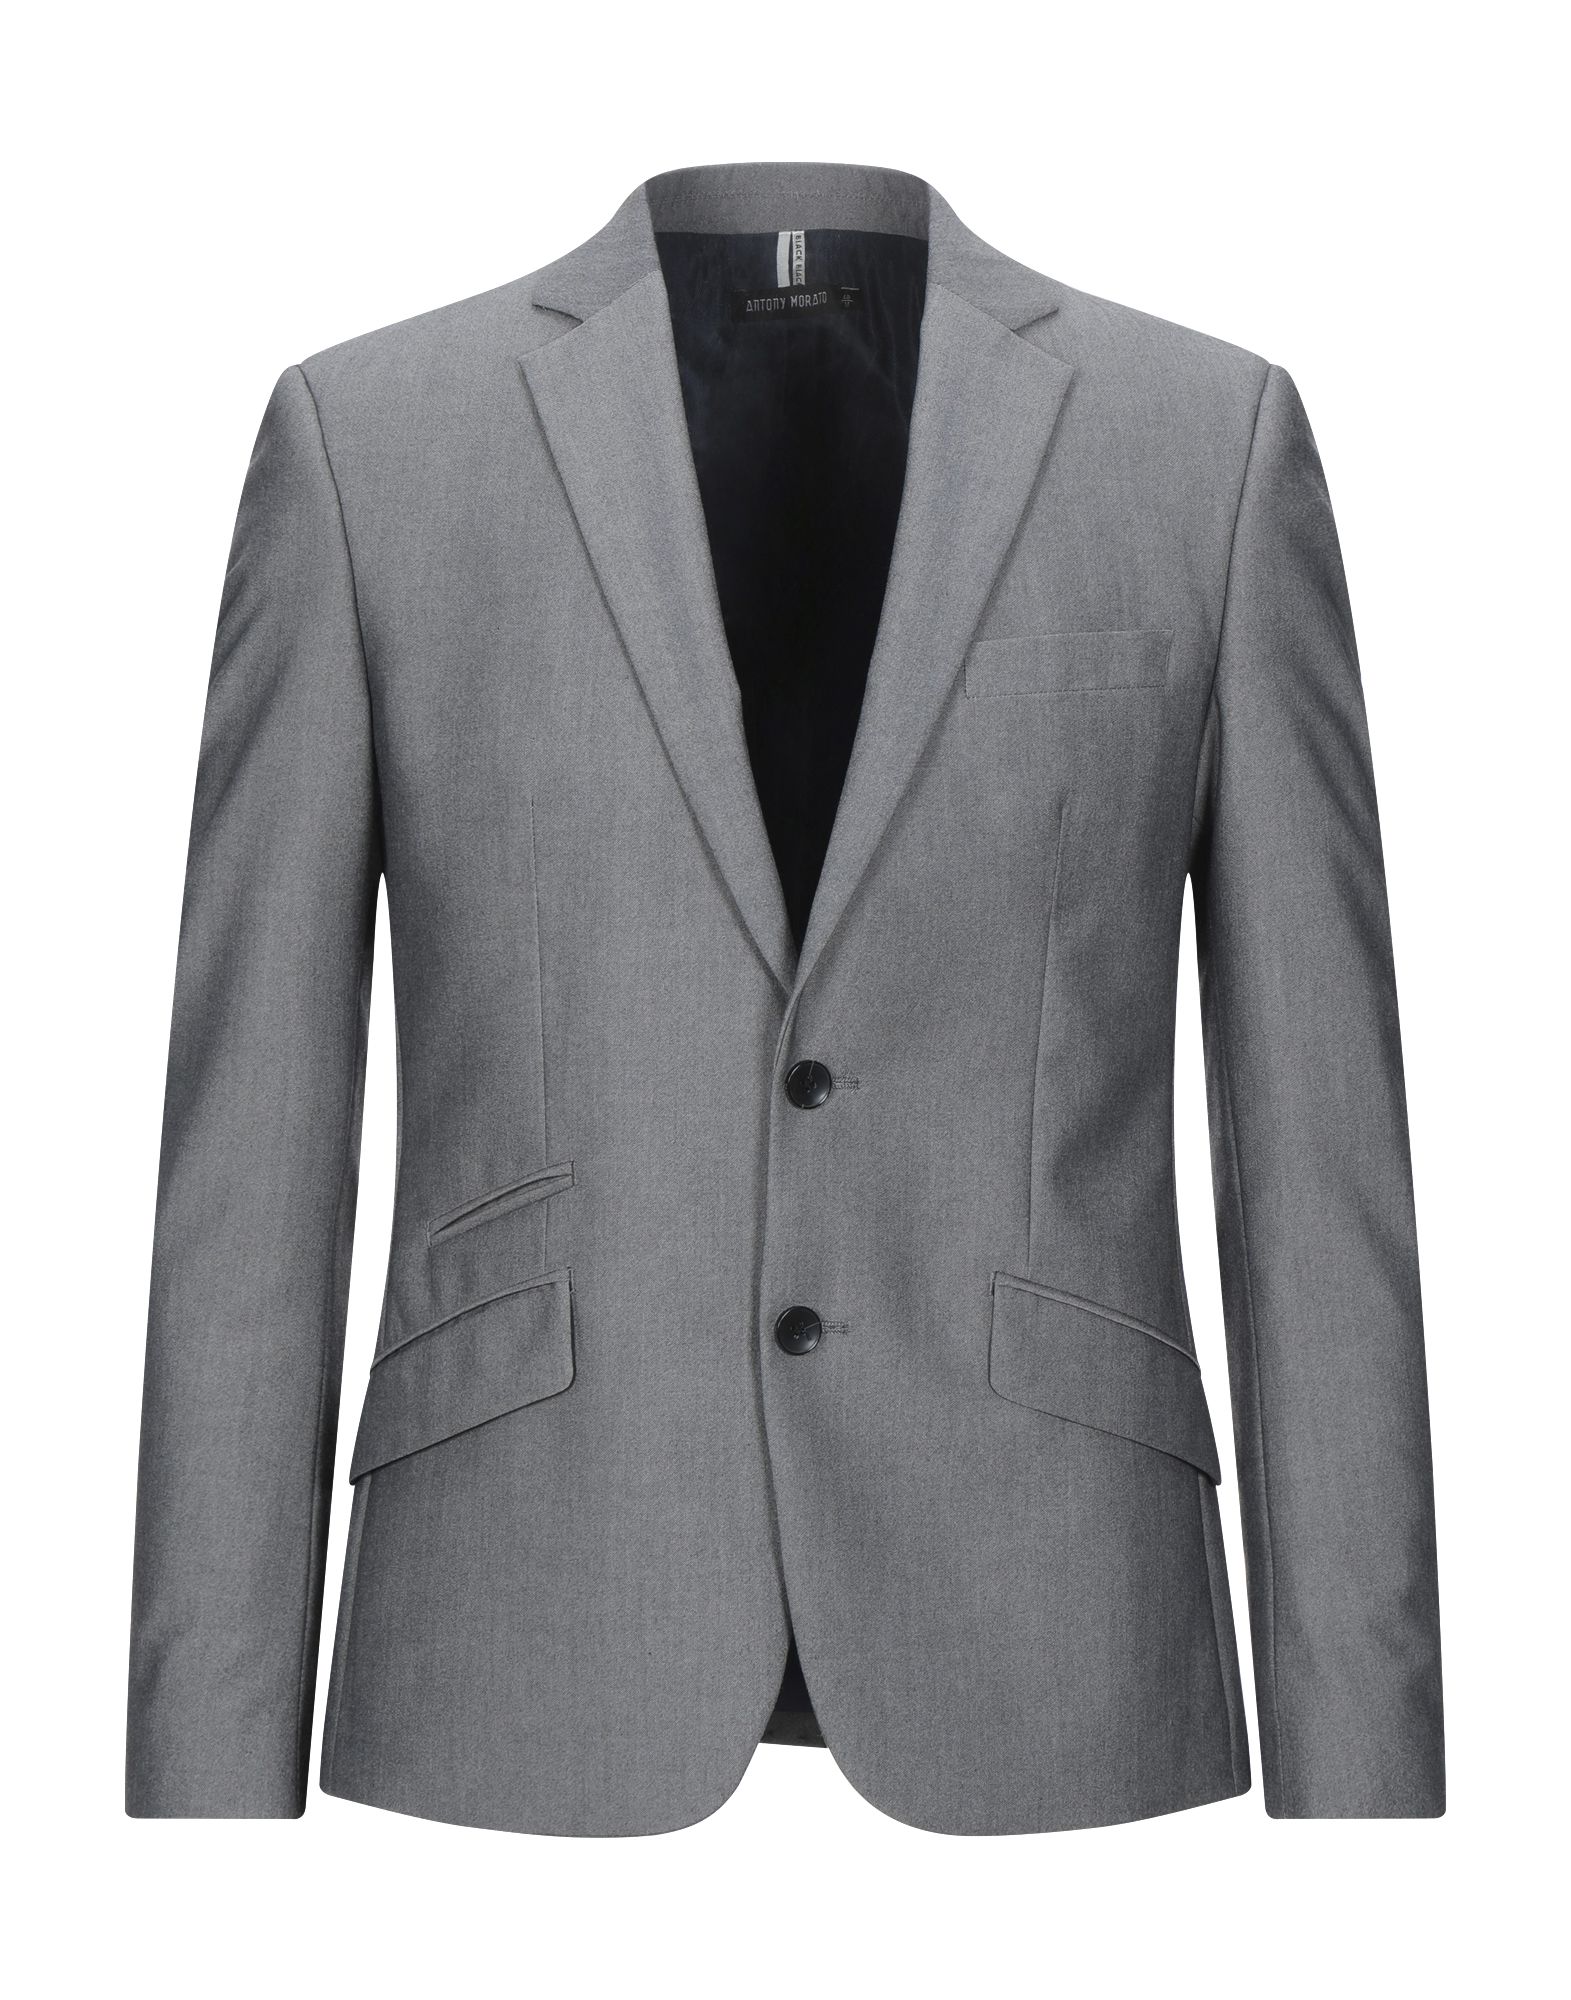 ANTONY MORATO Suit jackets - Item 49602380